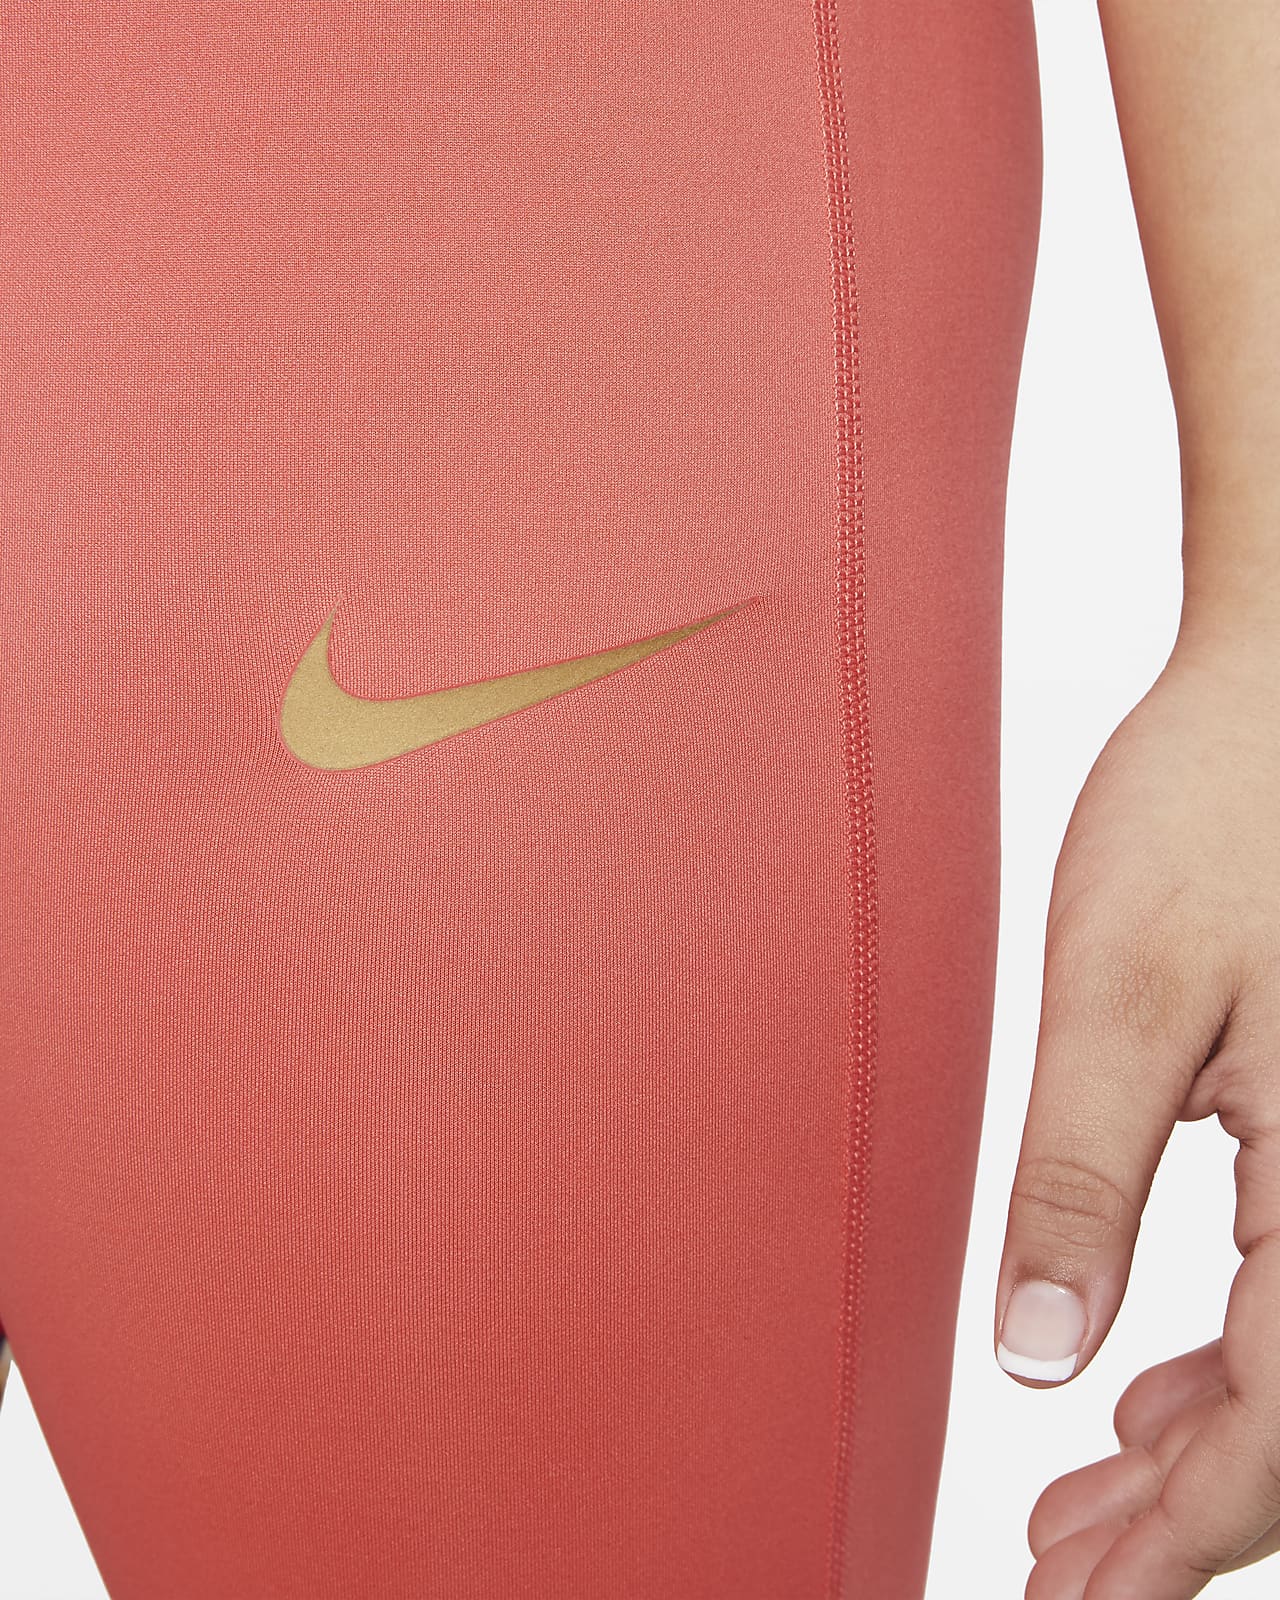 Nike / Girls' Dri-FIT One Studio Floral Leggings